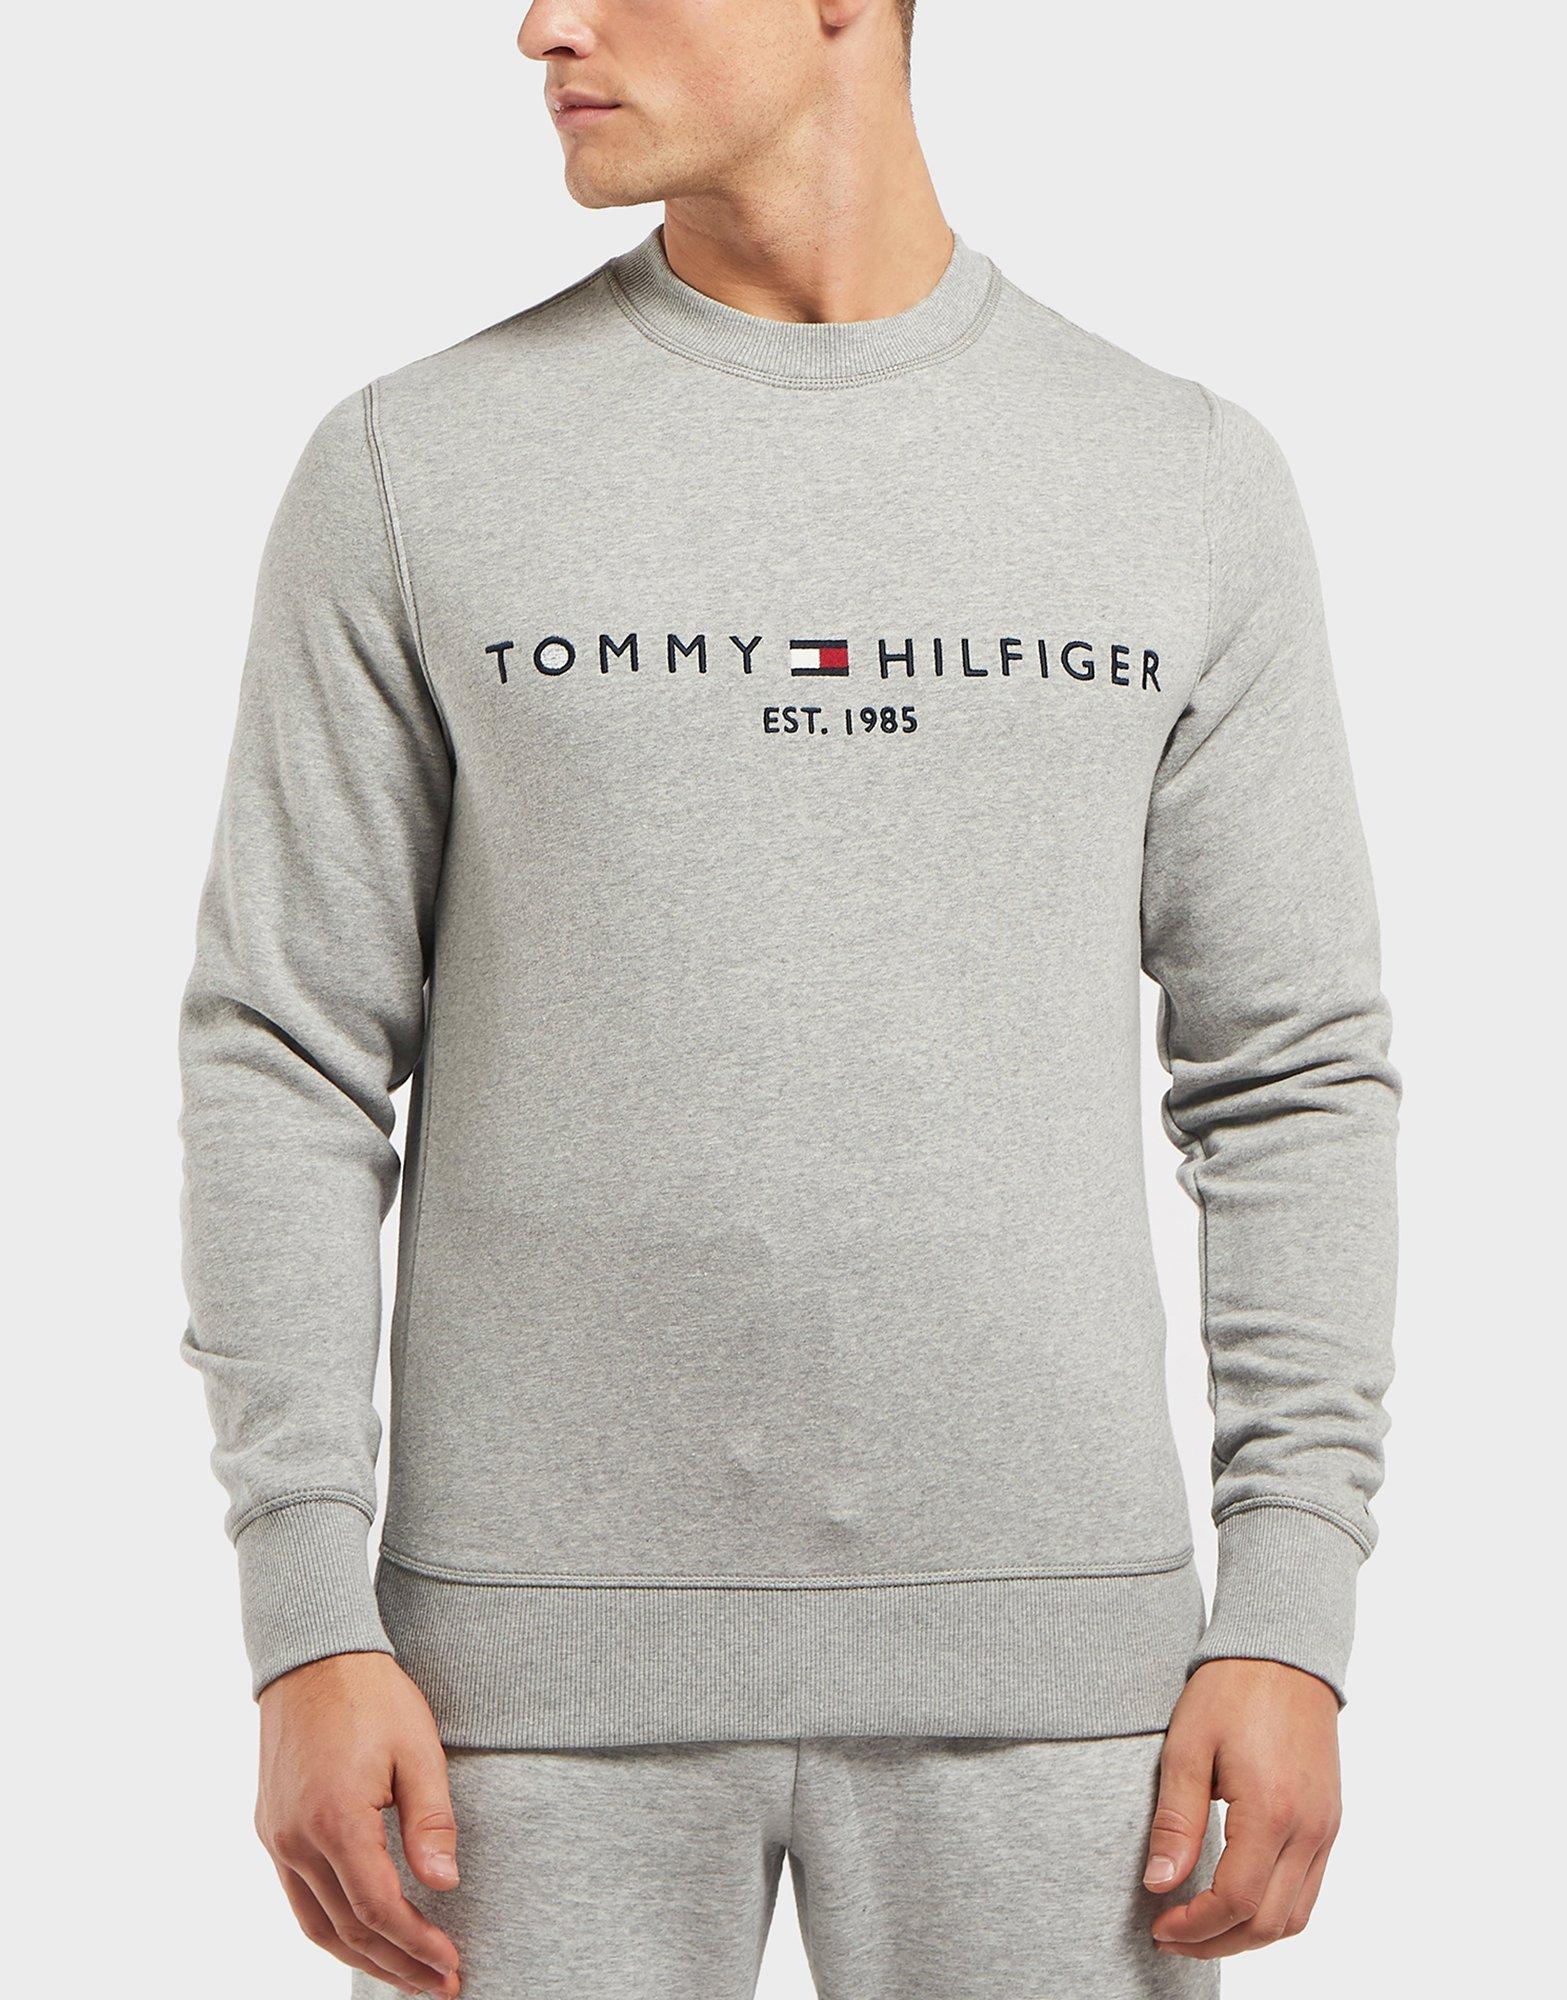 tommy hilfiger grey crew neck sweatshirt